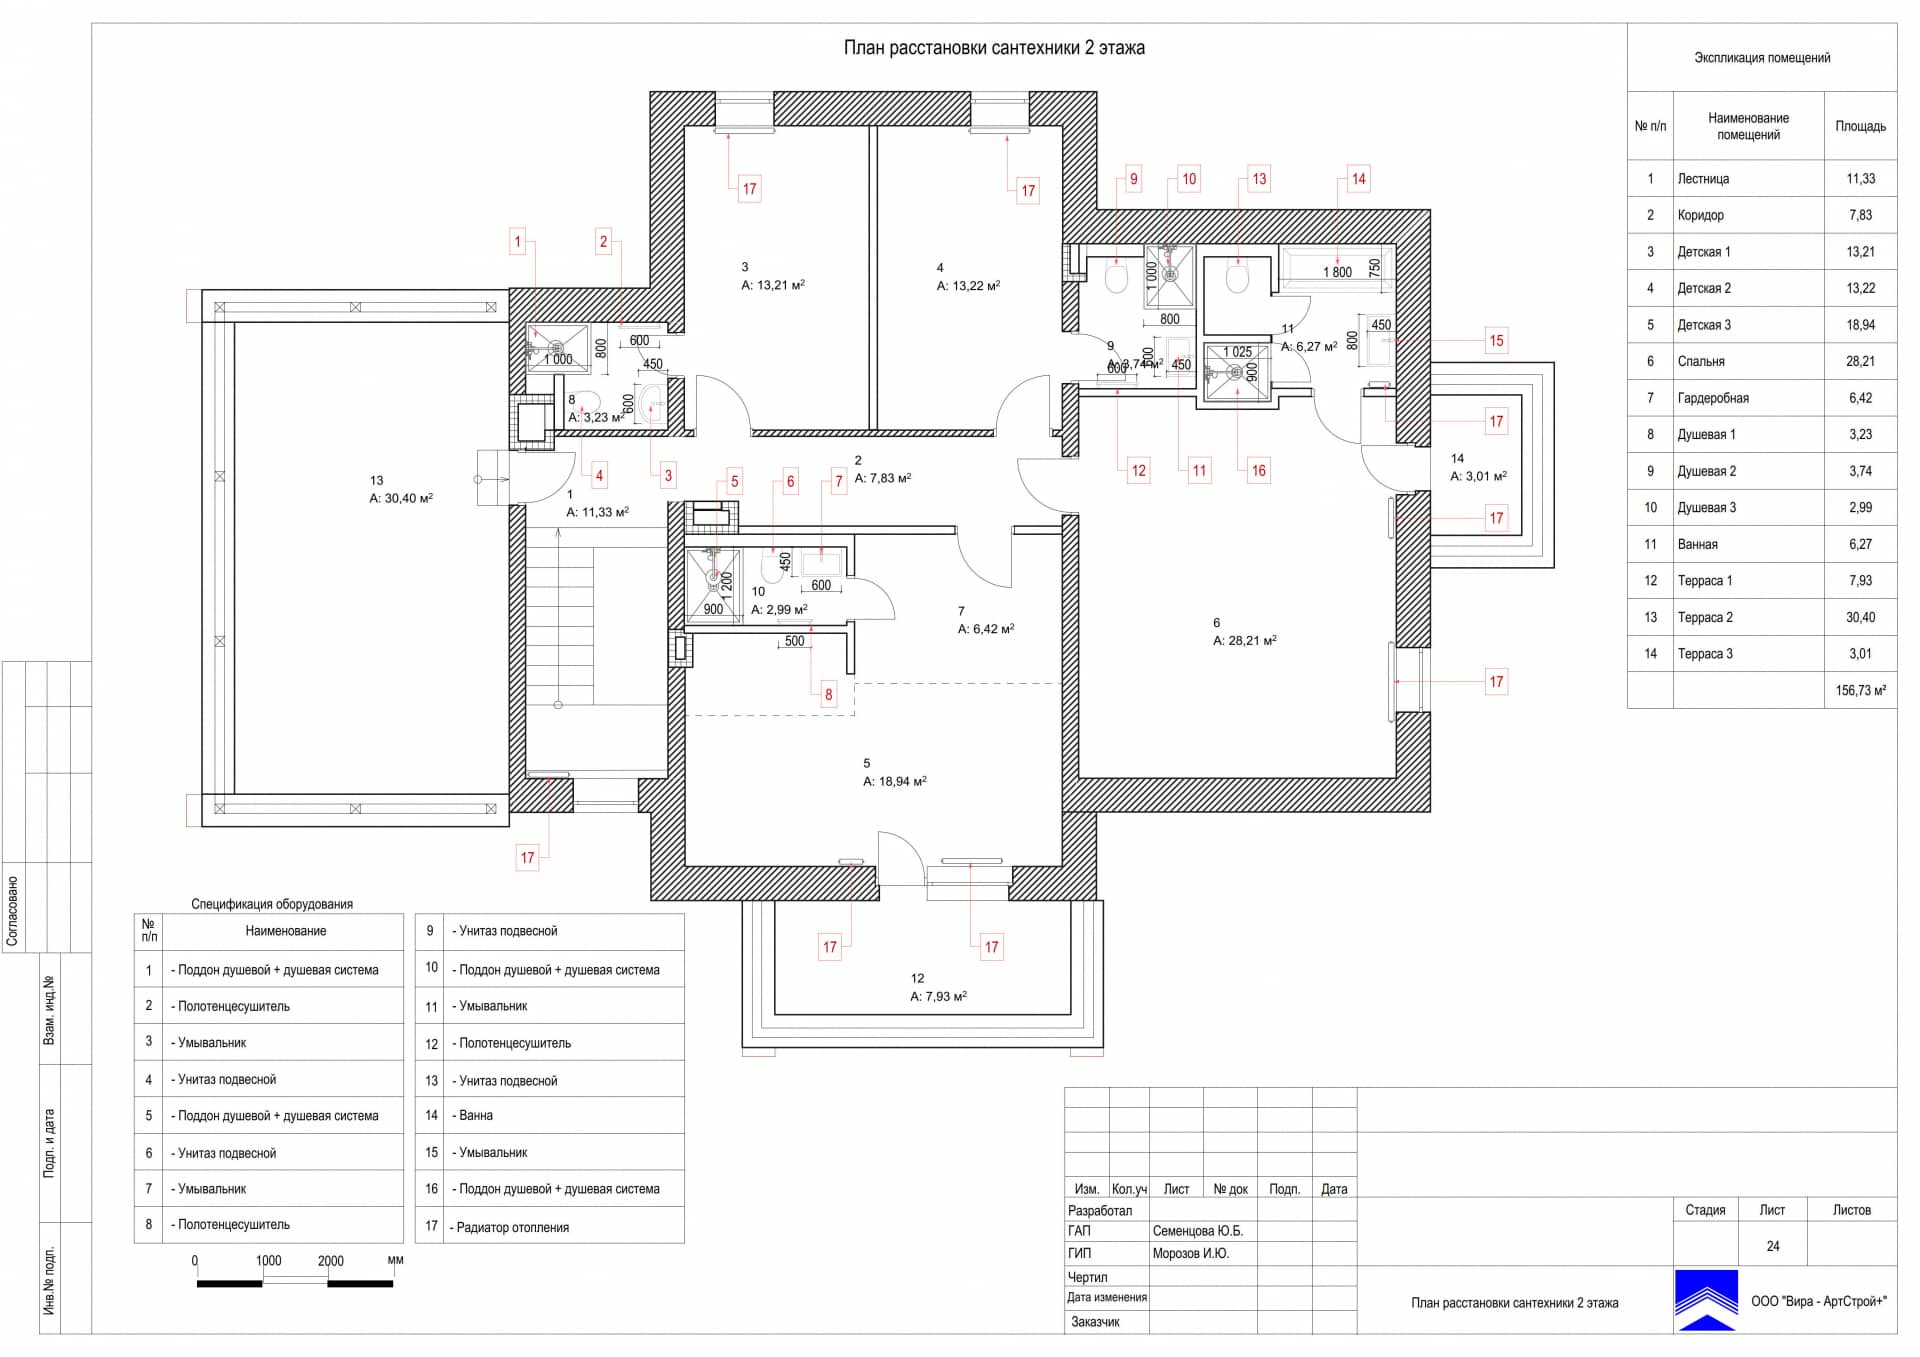 План расстановки сантехники 2 этажа, дом 471 м² в КП «Сорочаны»